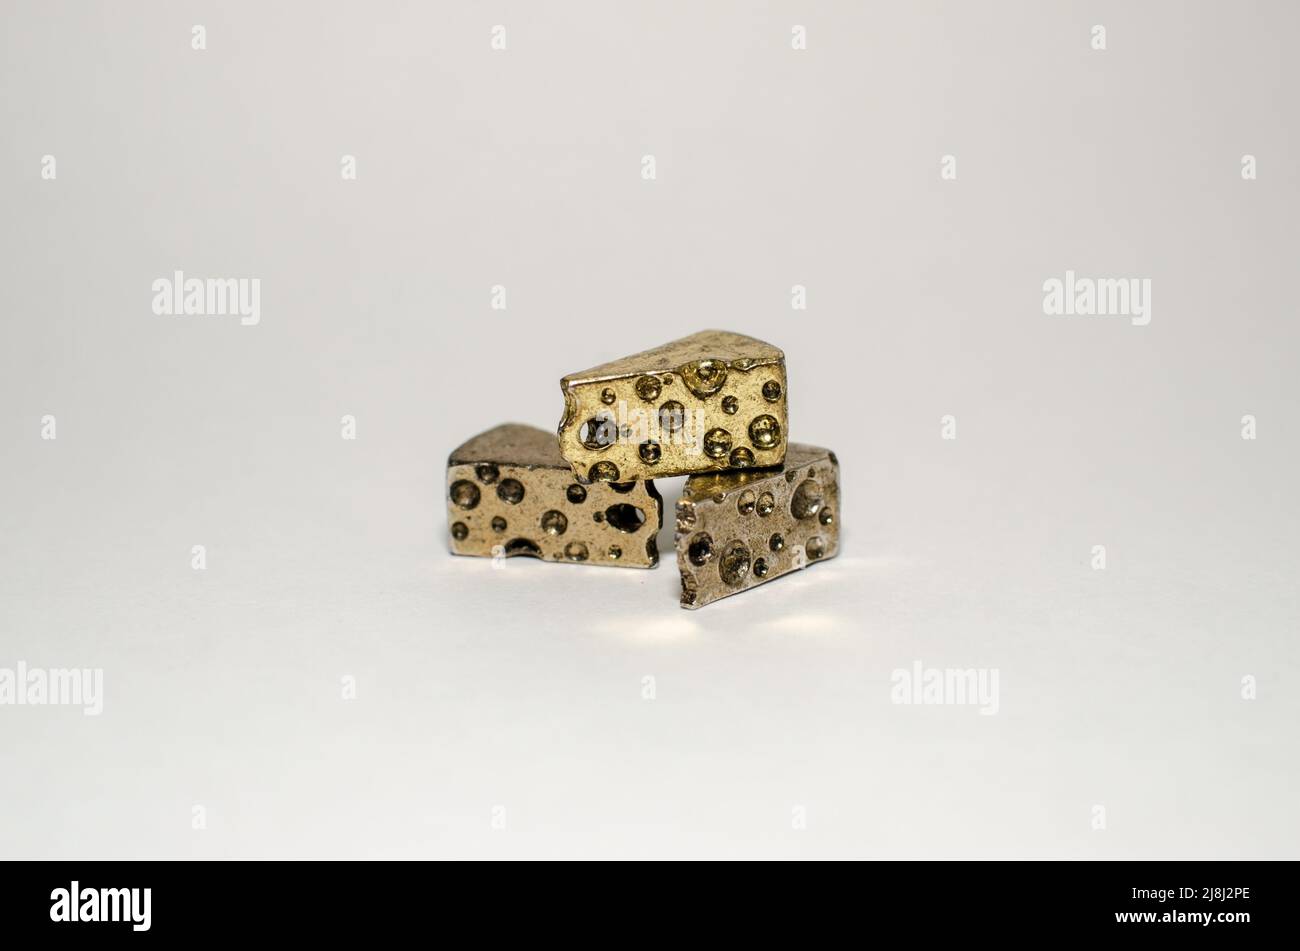 Tre spicchi di formaggio svizzero - Miniature Gold Metal Pewter Collectable Figurine, in Center on Plain background Foto Stock